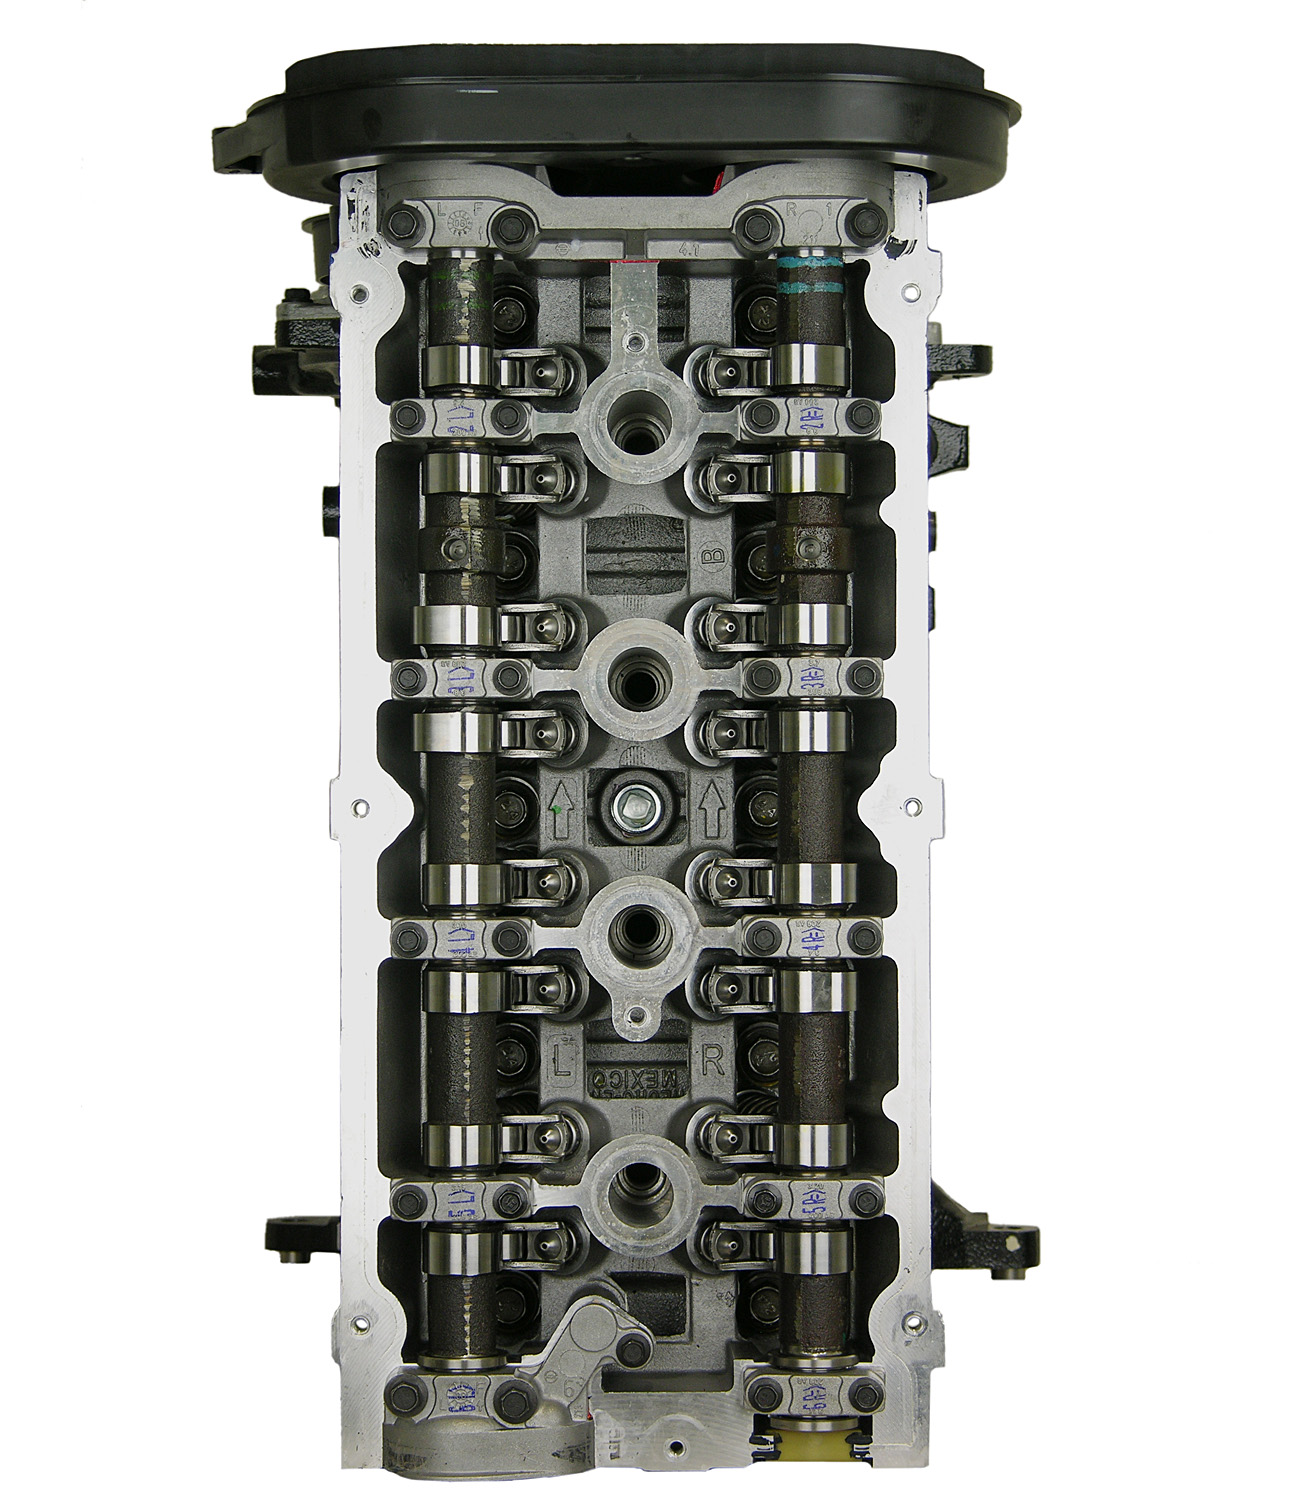 Chrysler 2.4L L4 Remanufactured Engine - 2004-2010